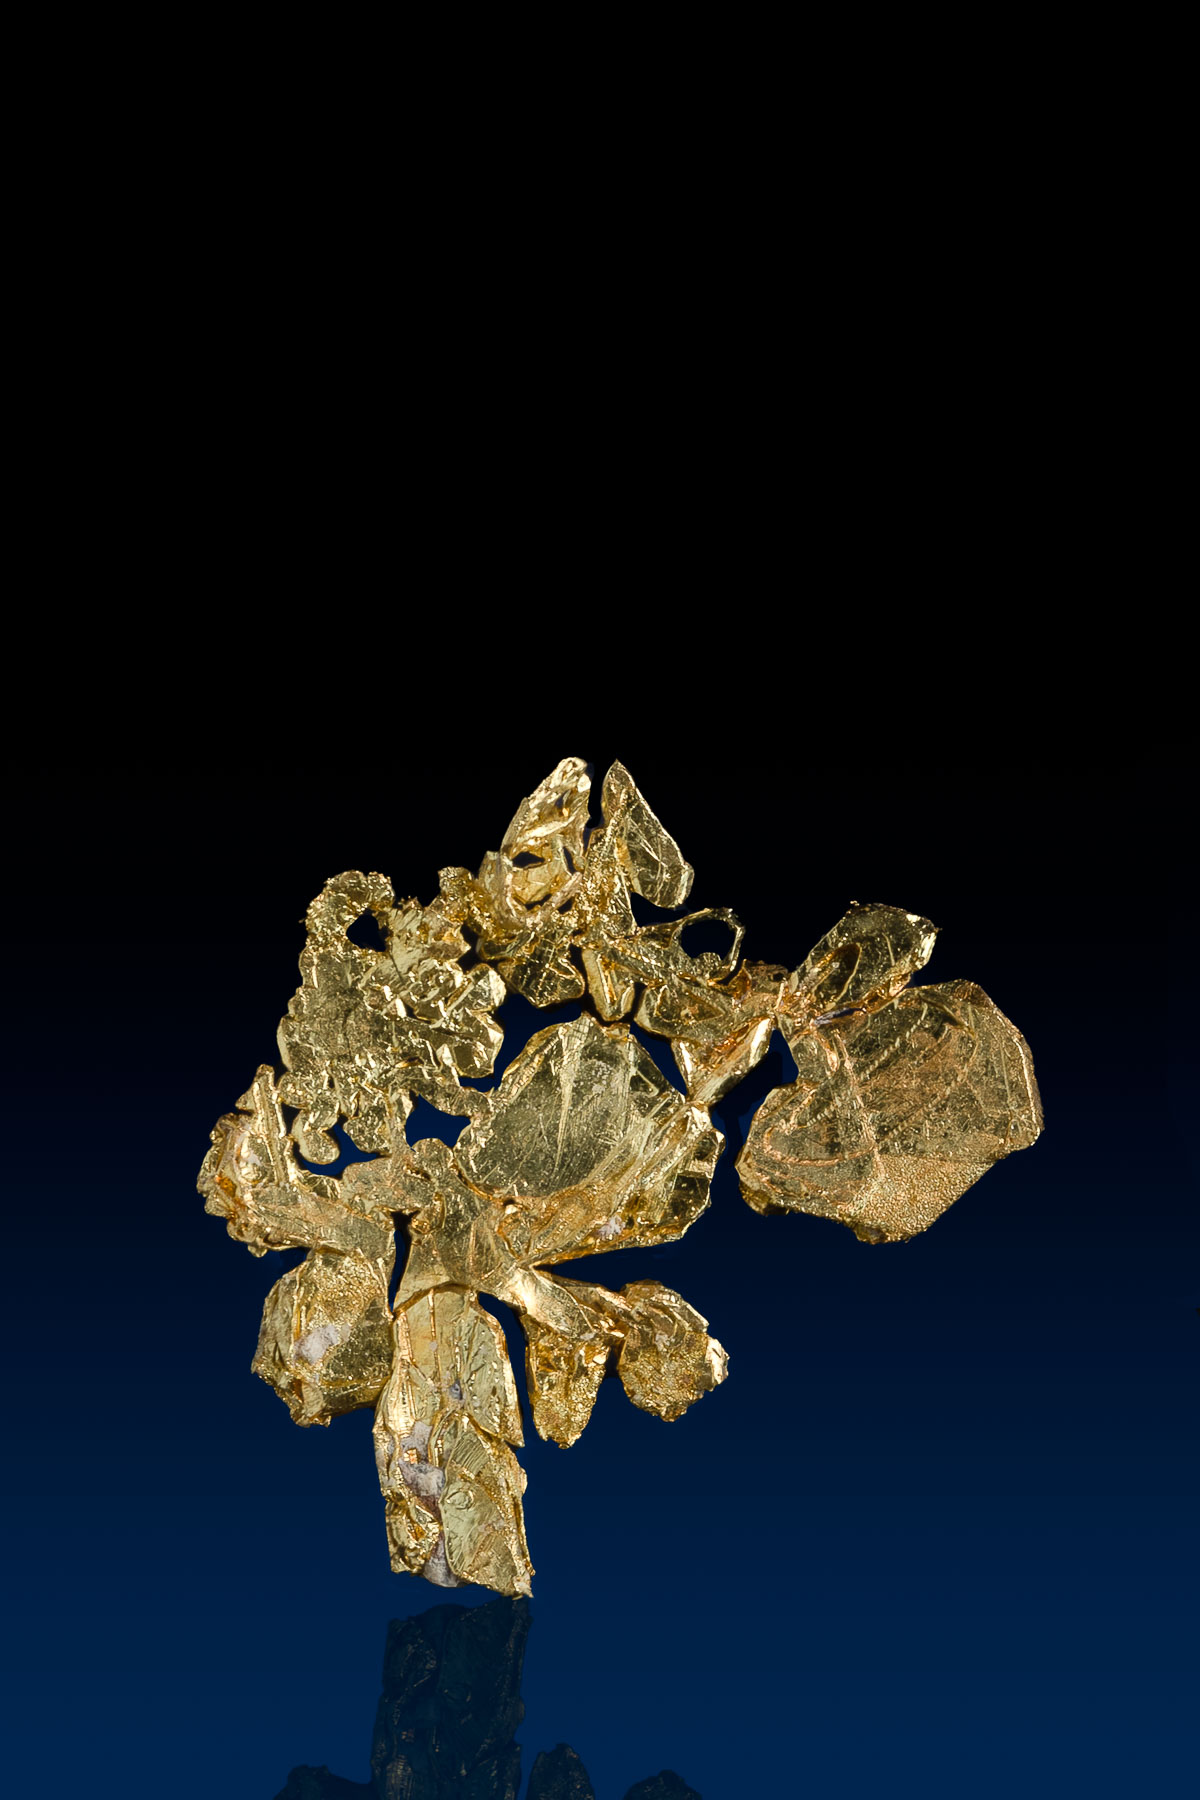 Fascinating Brilliant Natural Gold Crystal Specimen - CO